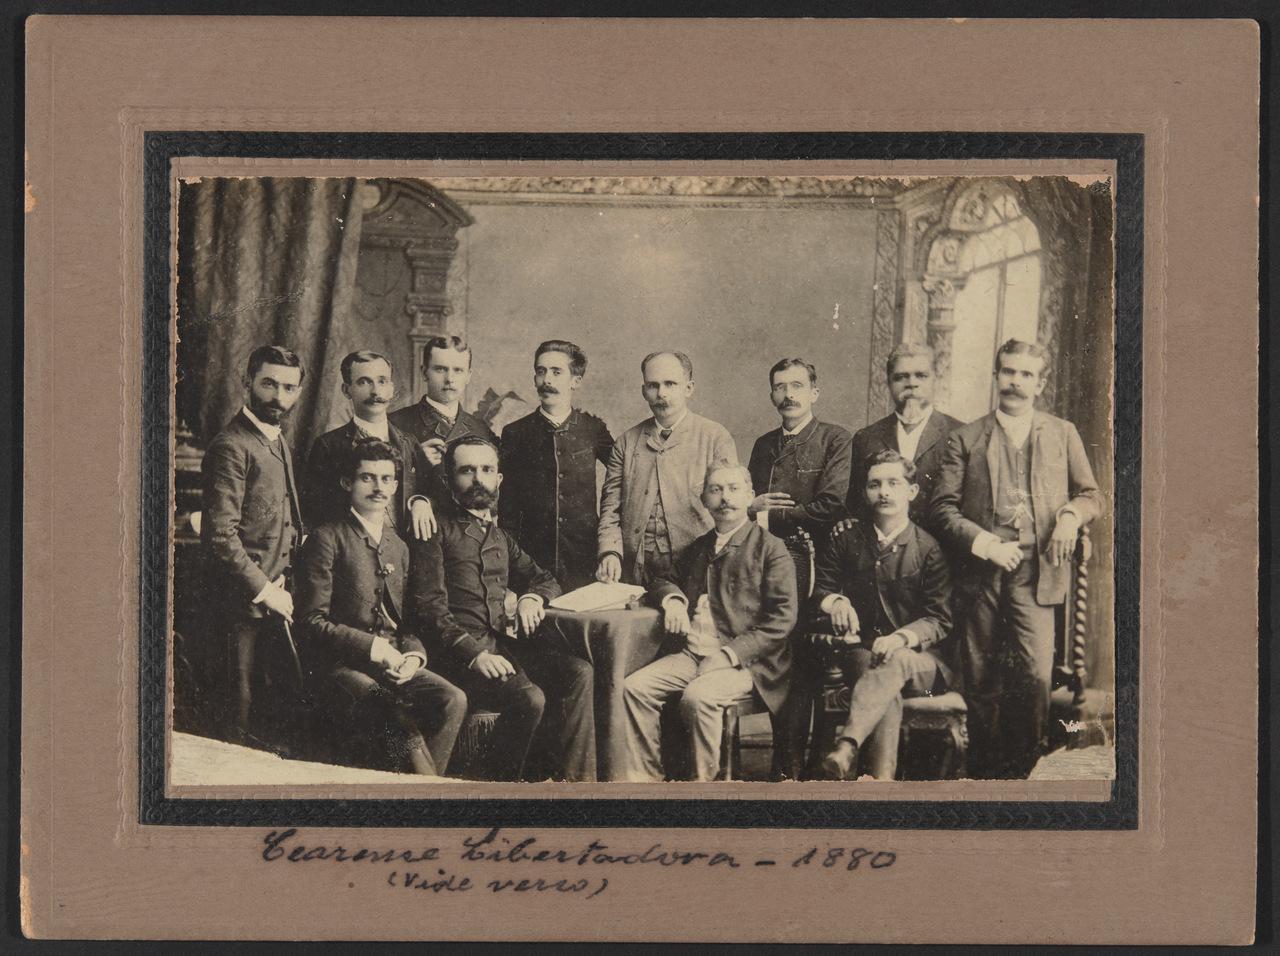 Cópia de registro fotográfico de 1880 de Chico da Matilde (o penúltimo da esquerda para direita em pé) em encontro da Sociedade Cearense Libertadora, digitalizado no MIS Ceará